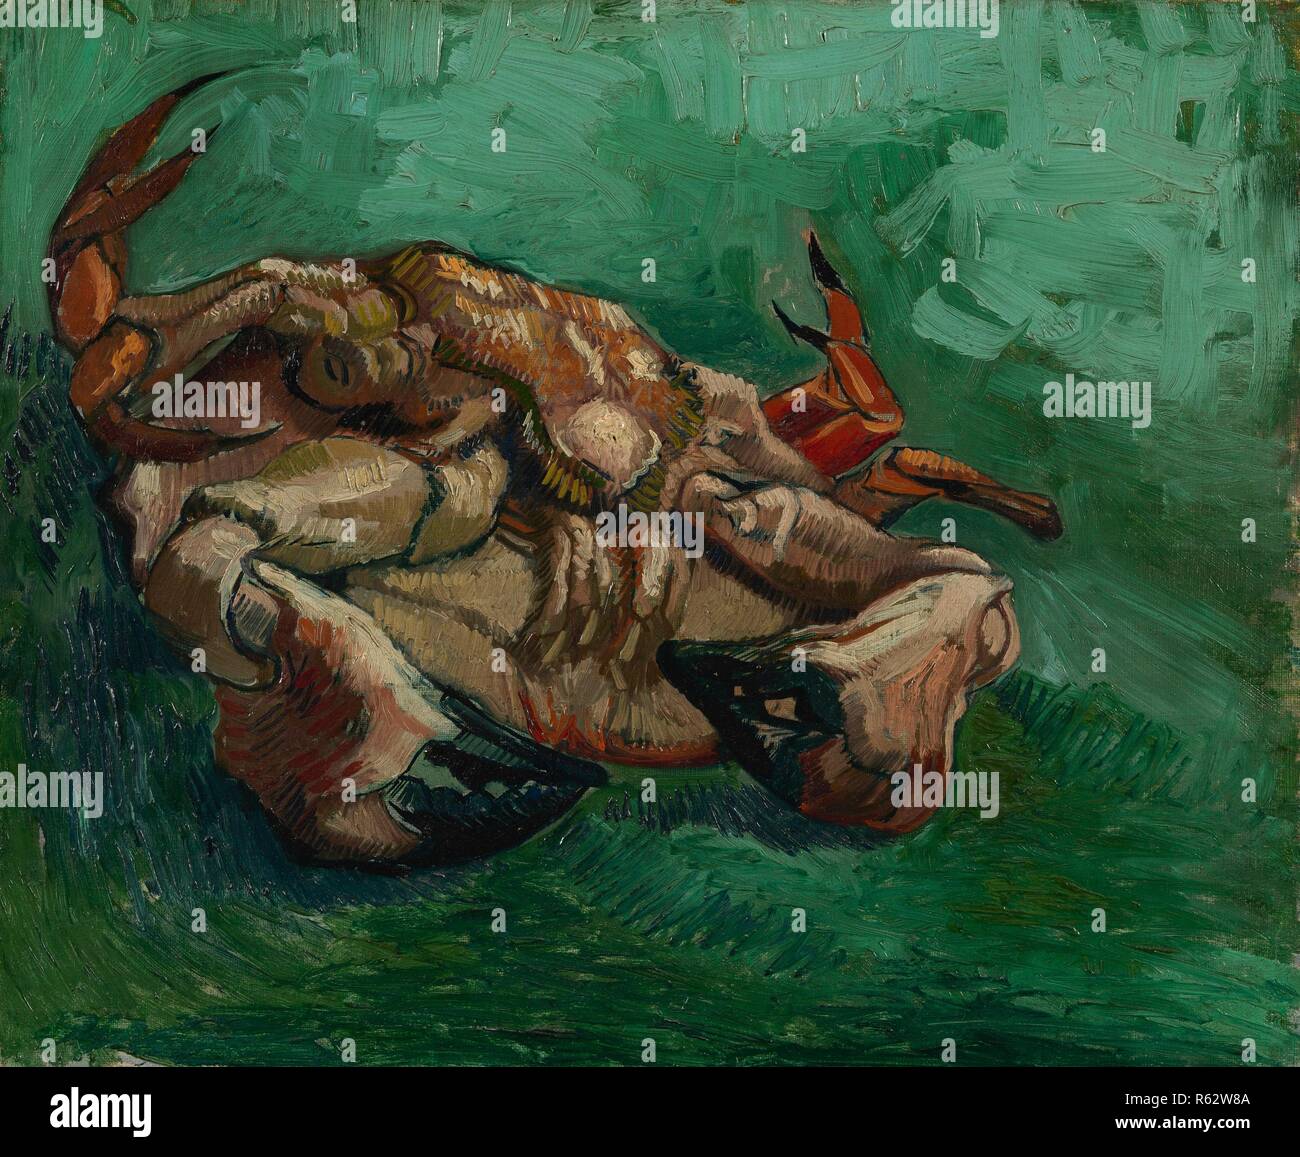 Un crabe sur son dos. Date : août-septembre 1887, Paris. Dimensions : 38,0 cm x 46,8 cm, 55,5 cm x 63,6 cm. Musée : Musée Van Gogh, Amsterdam. Auteur : VAN GOGH, Vincent. VINCENT VAN GOGH. Banque D'Images